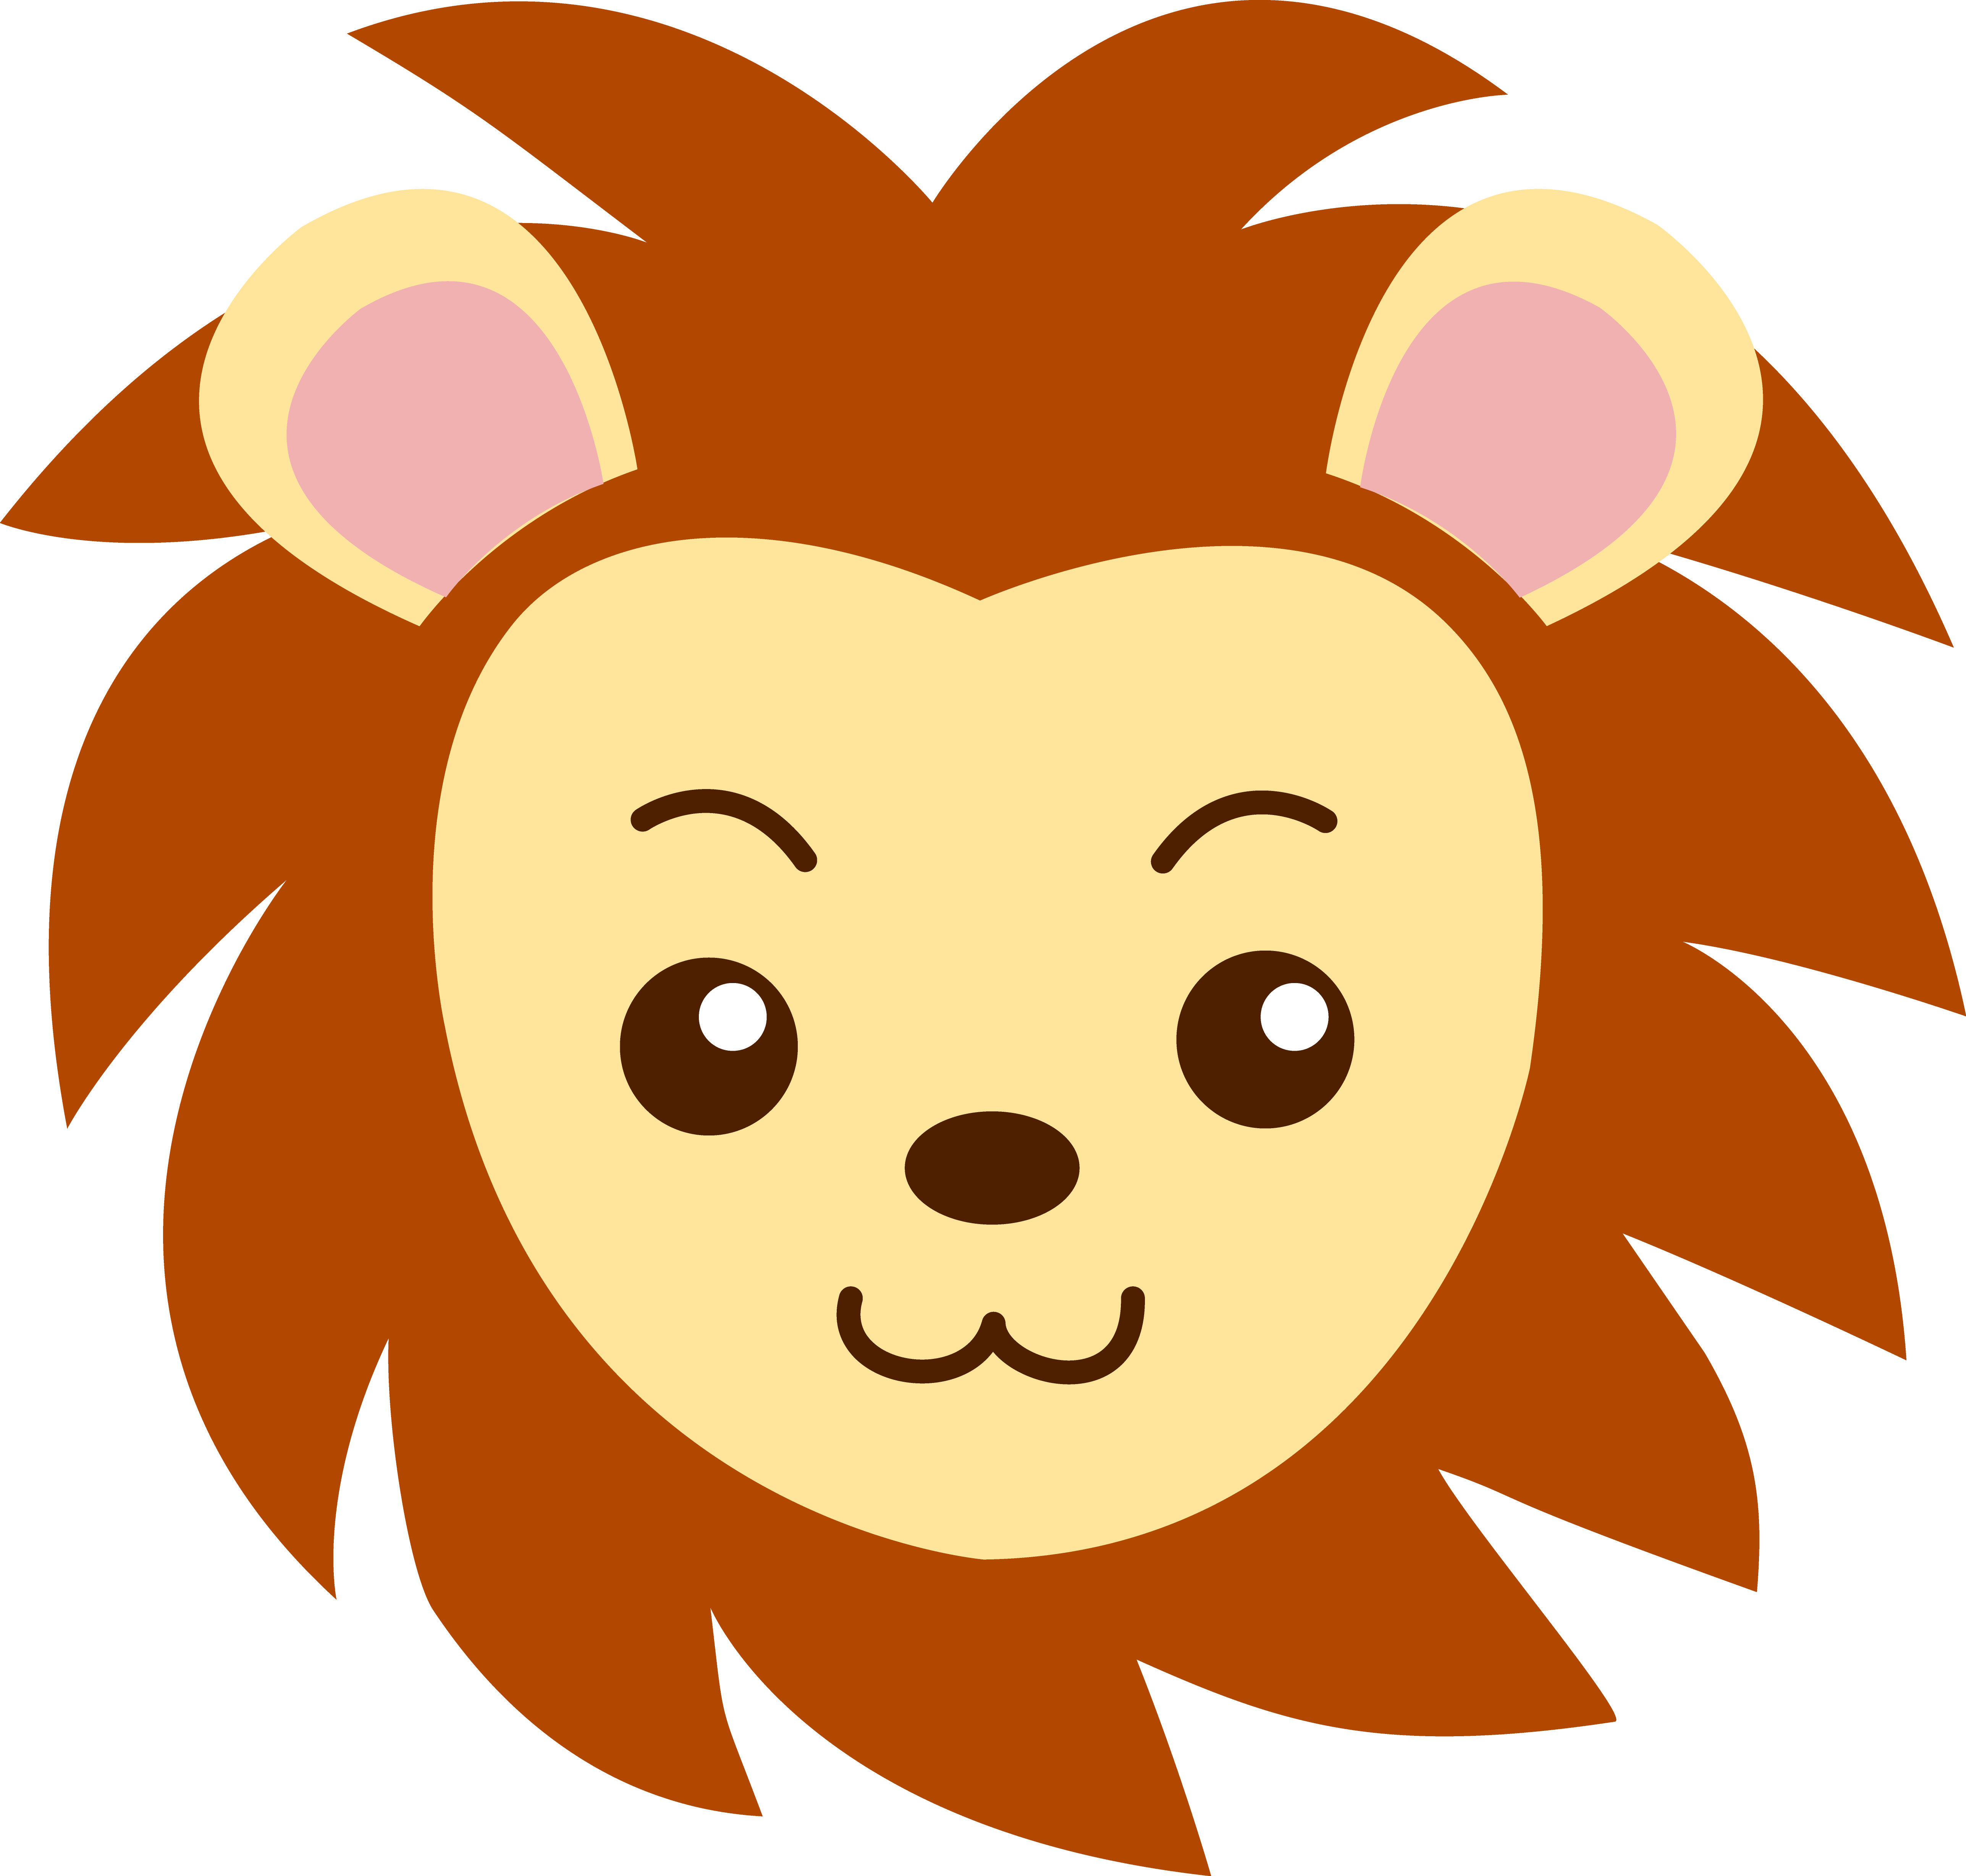 Cartoon Face Of A Lion - ClipArt Best